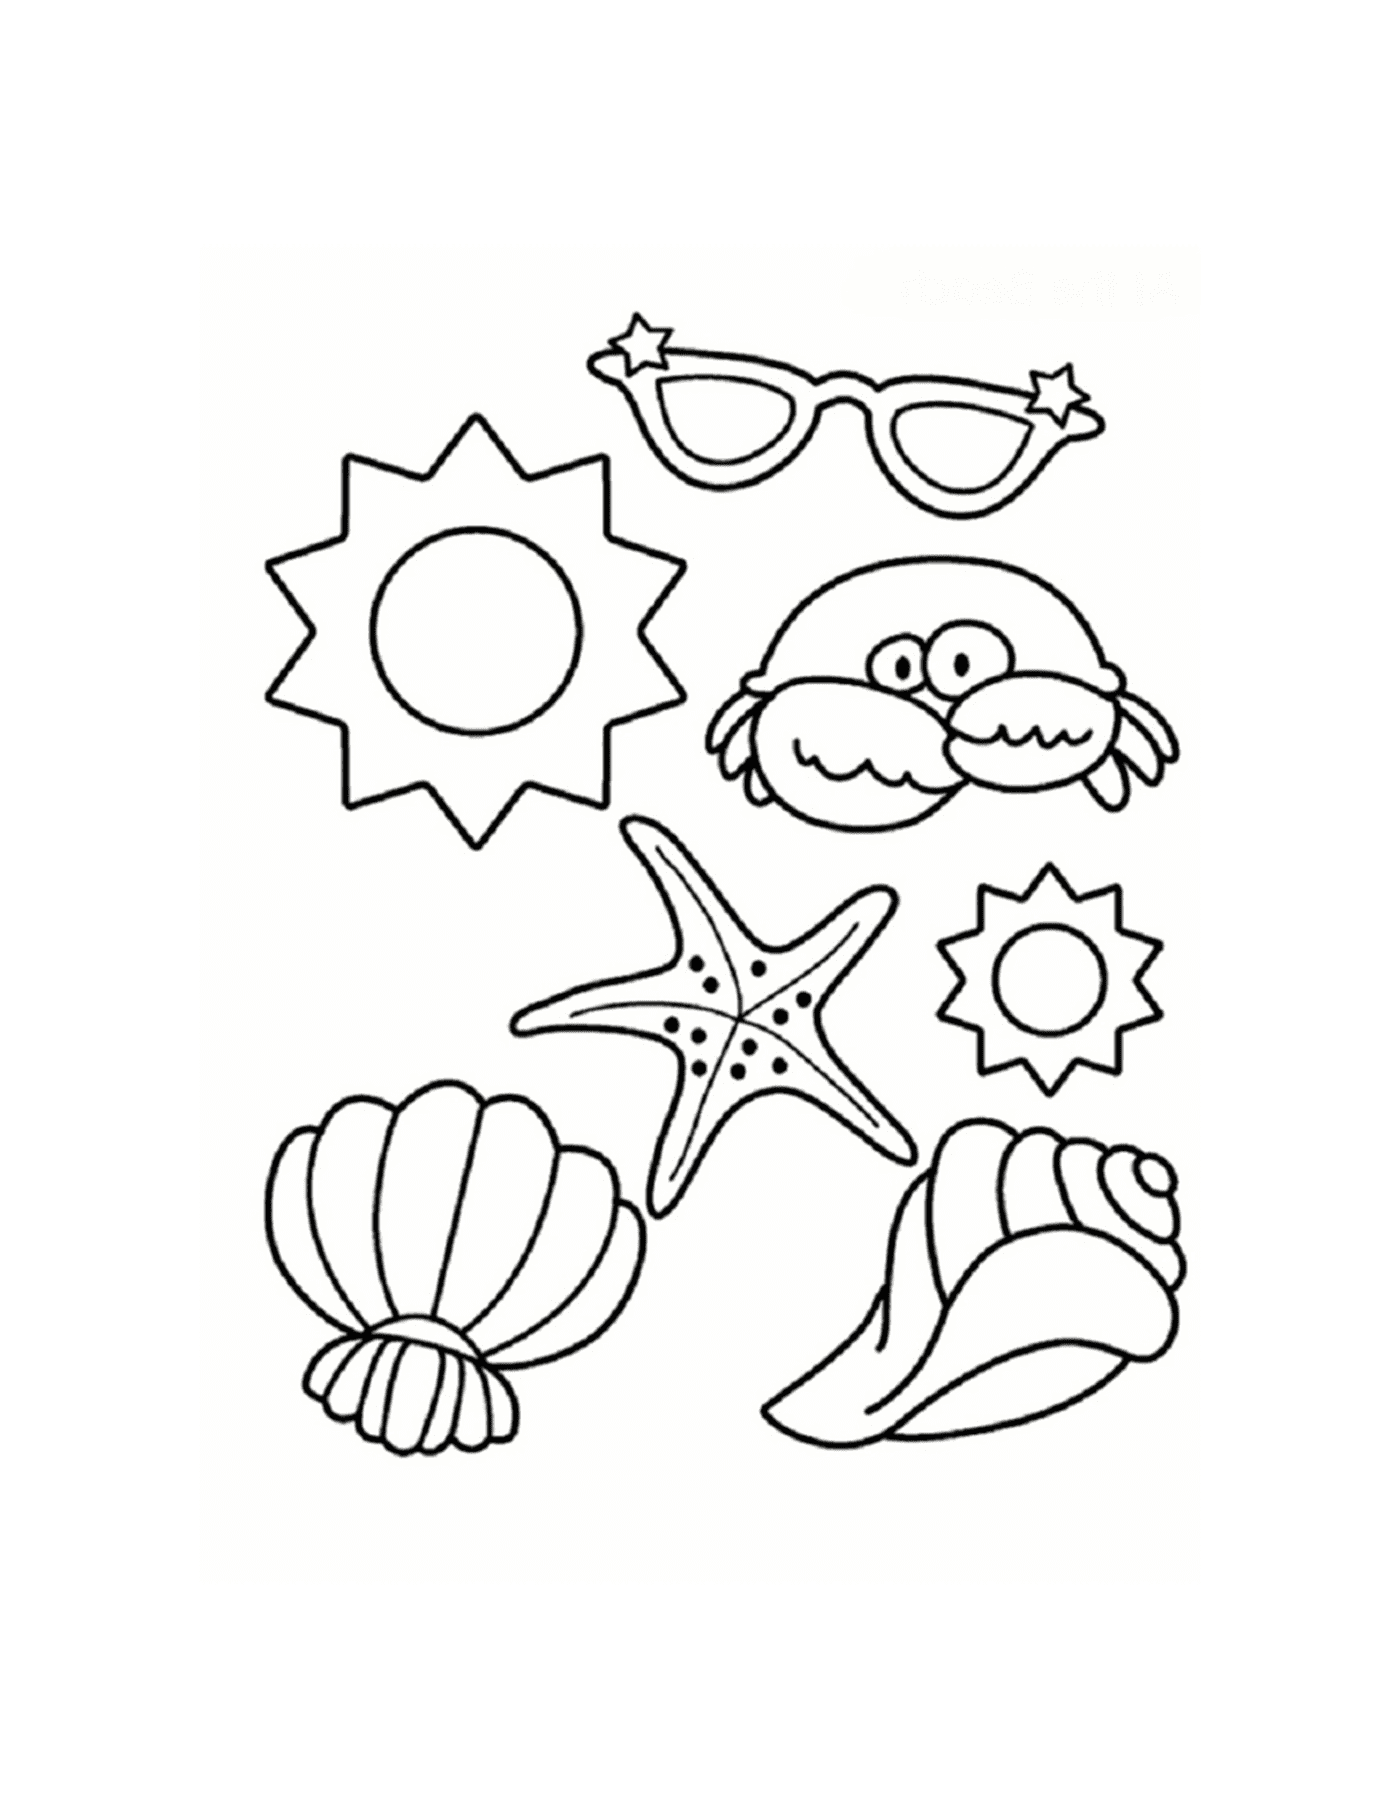  Shellfish, starfish, crab and sunglasses on the beach 